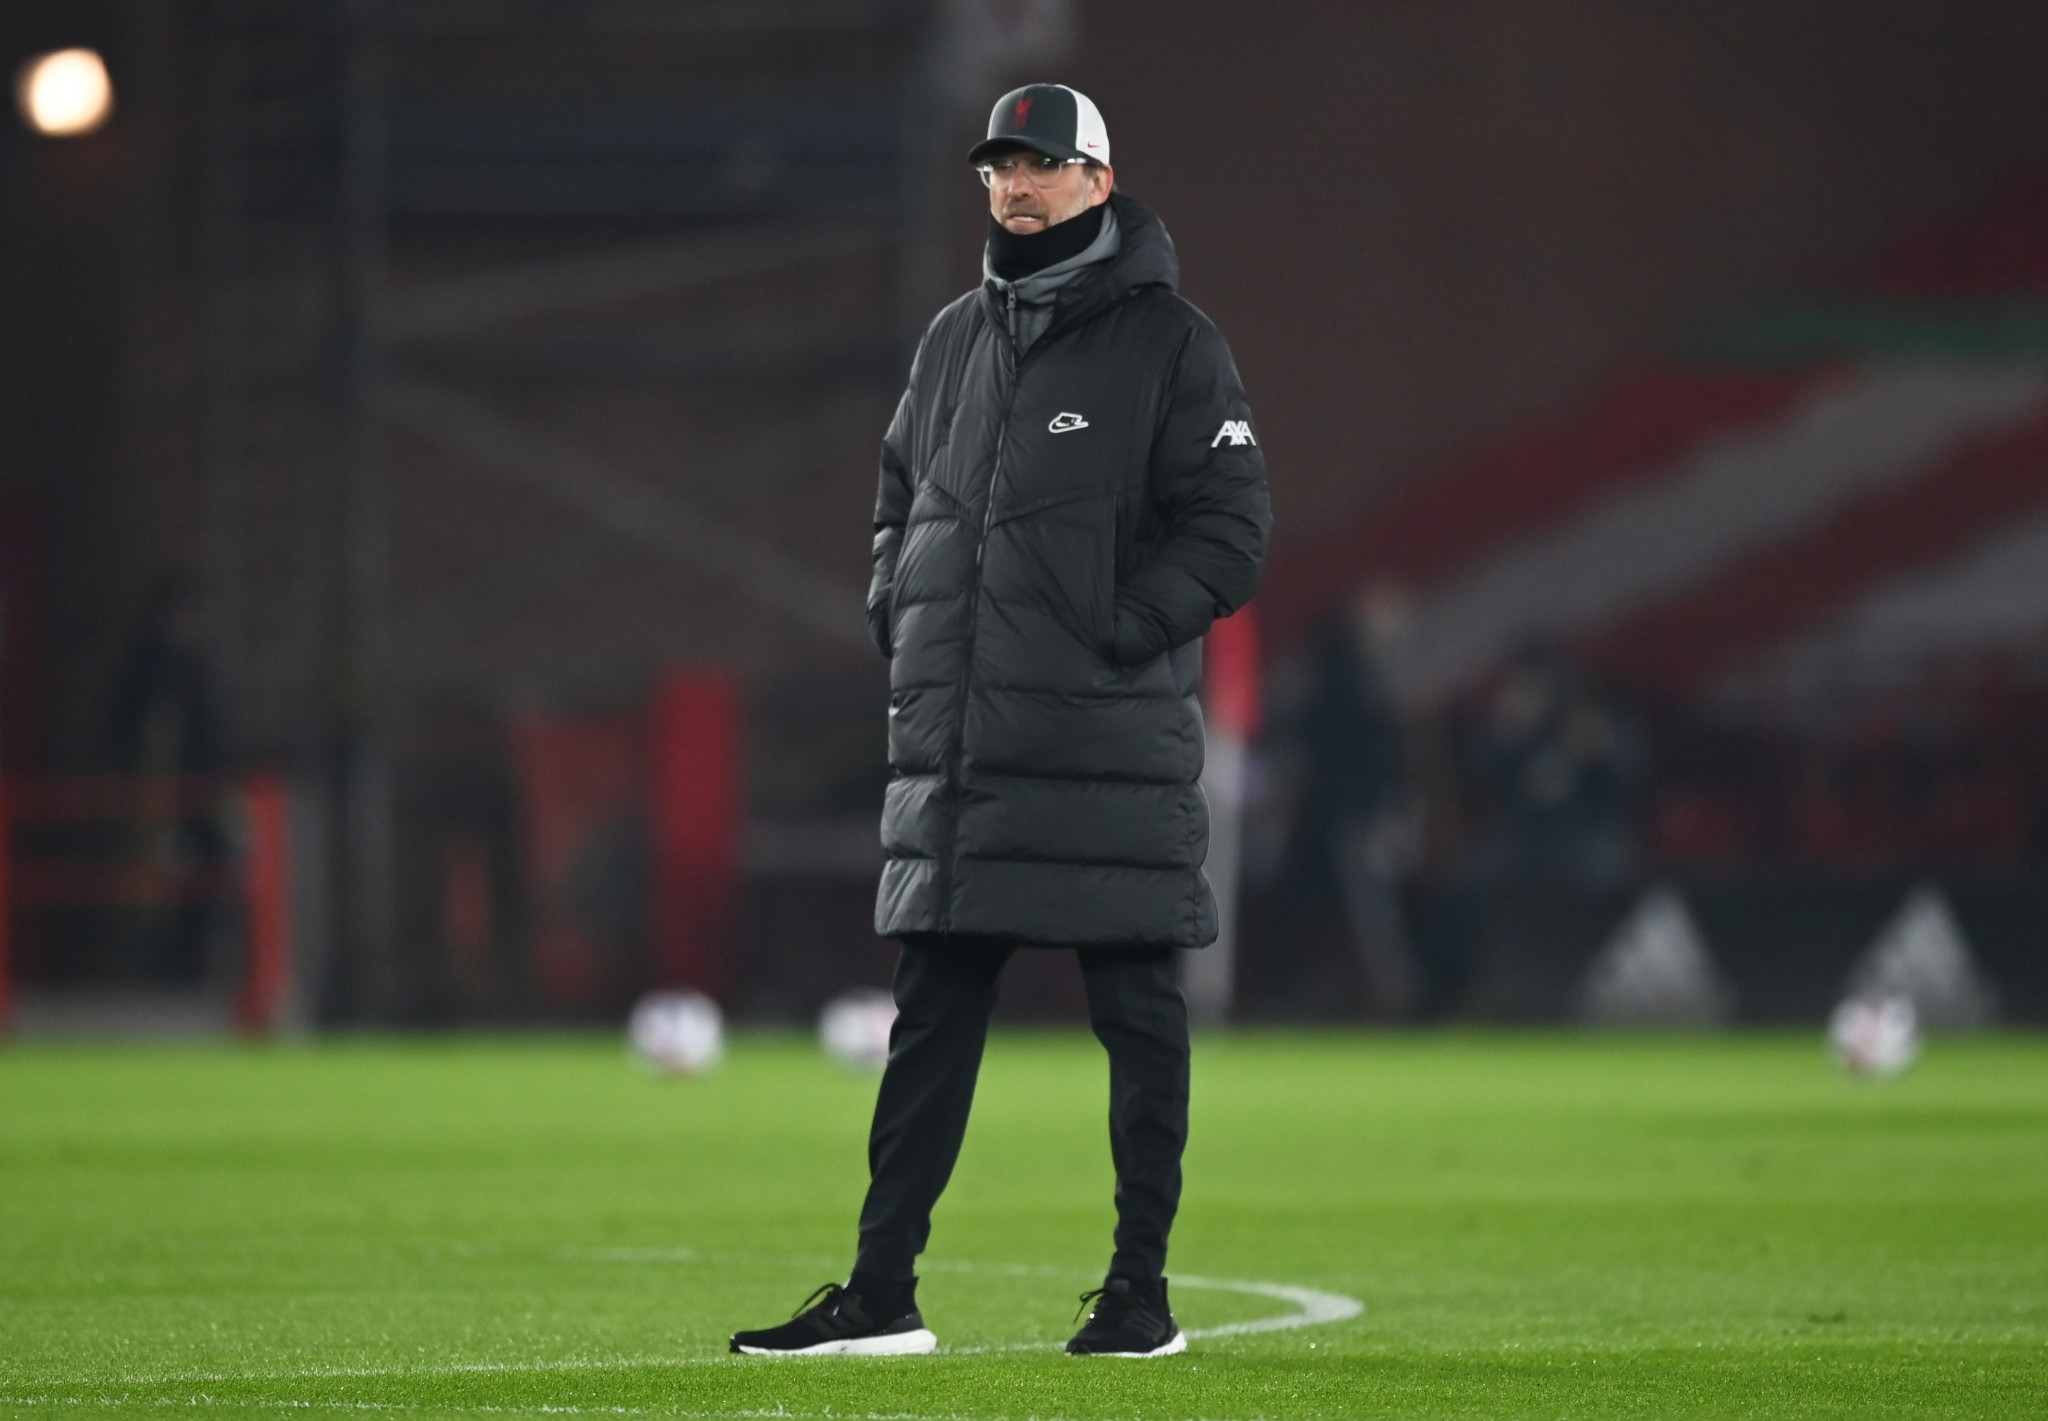 Jürgen Klopp de Liverpool faisait partie des managers pour suggérer de ne pas libérer de joueurs pour les qualifications © Getty Images